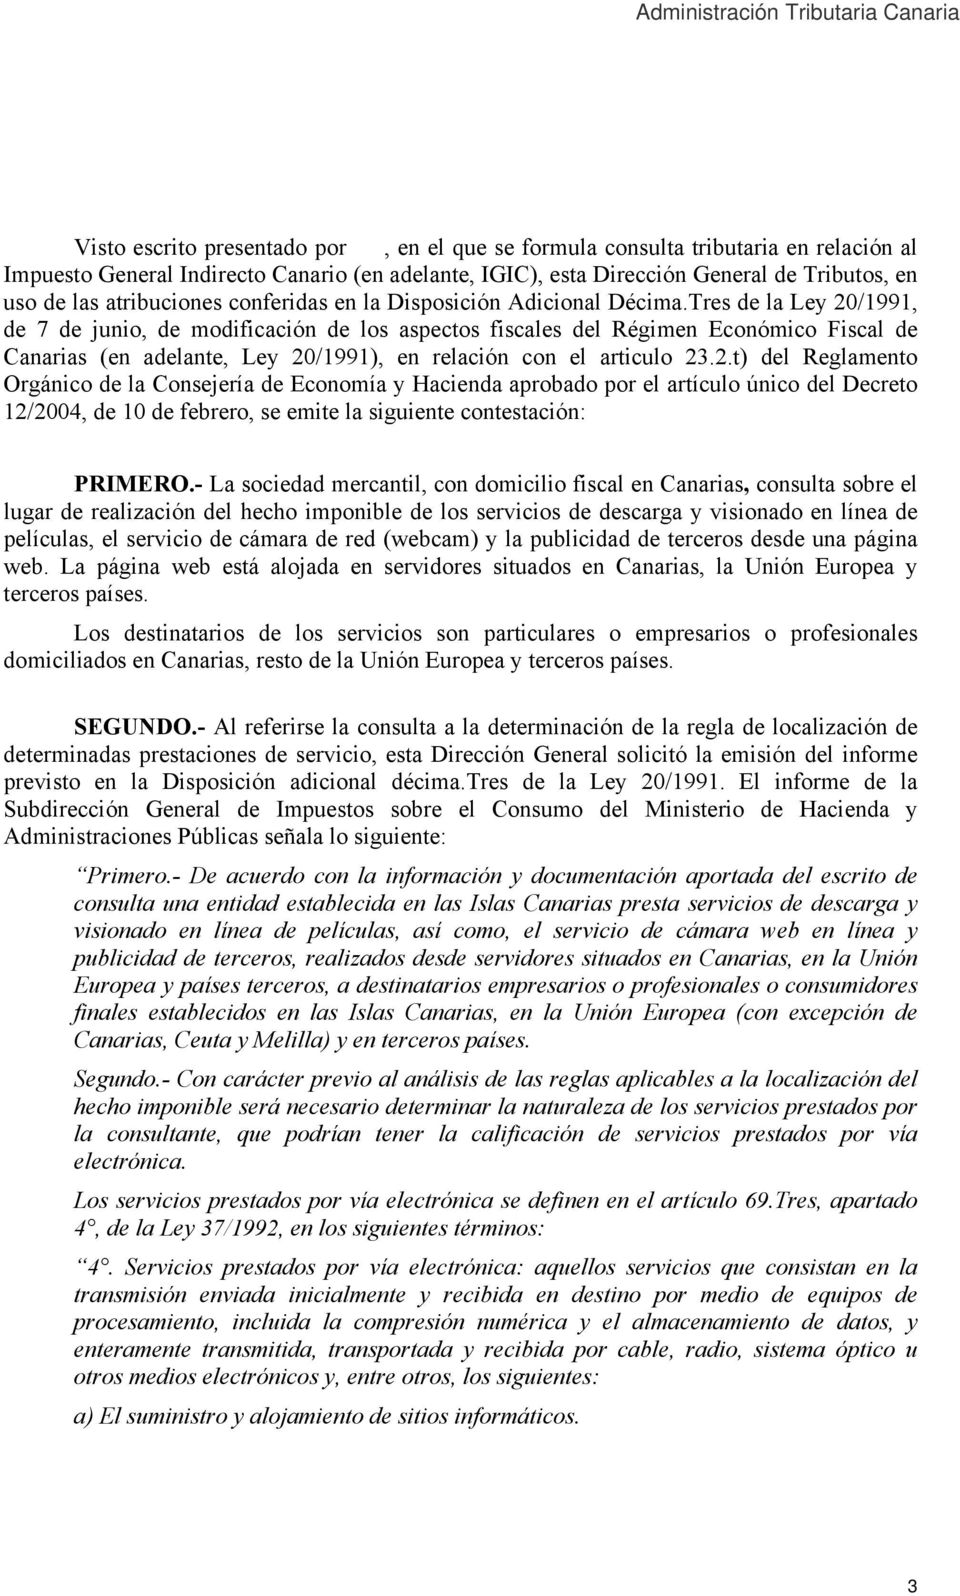 Tres de la Ley 20/1991, de 7 de junio, de modificación de los aspectos fiscales del Régimen Económico Fiscal de Canarias (en adelante, Ley 20/1991), en relación con el articulo 23.2.t) del Reglamento Orgánico de la Consejería de Economía y Hacienda aprobado por el artículo único del Decreto 12/2004, de 10 de febrero, se emite la siguiente contestación: PRIMERO.